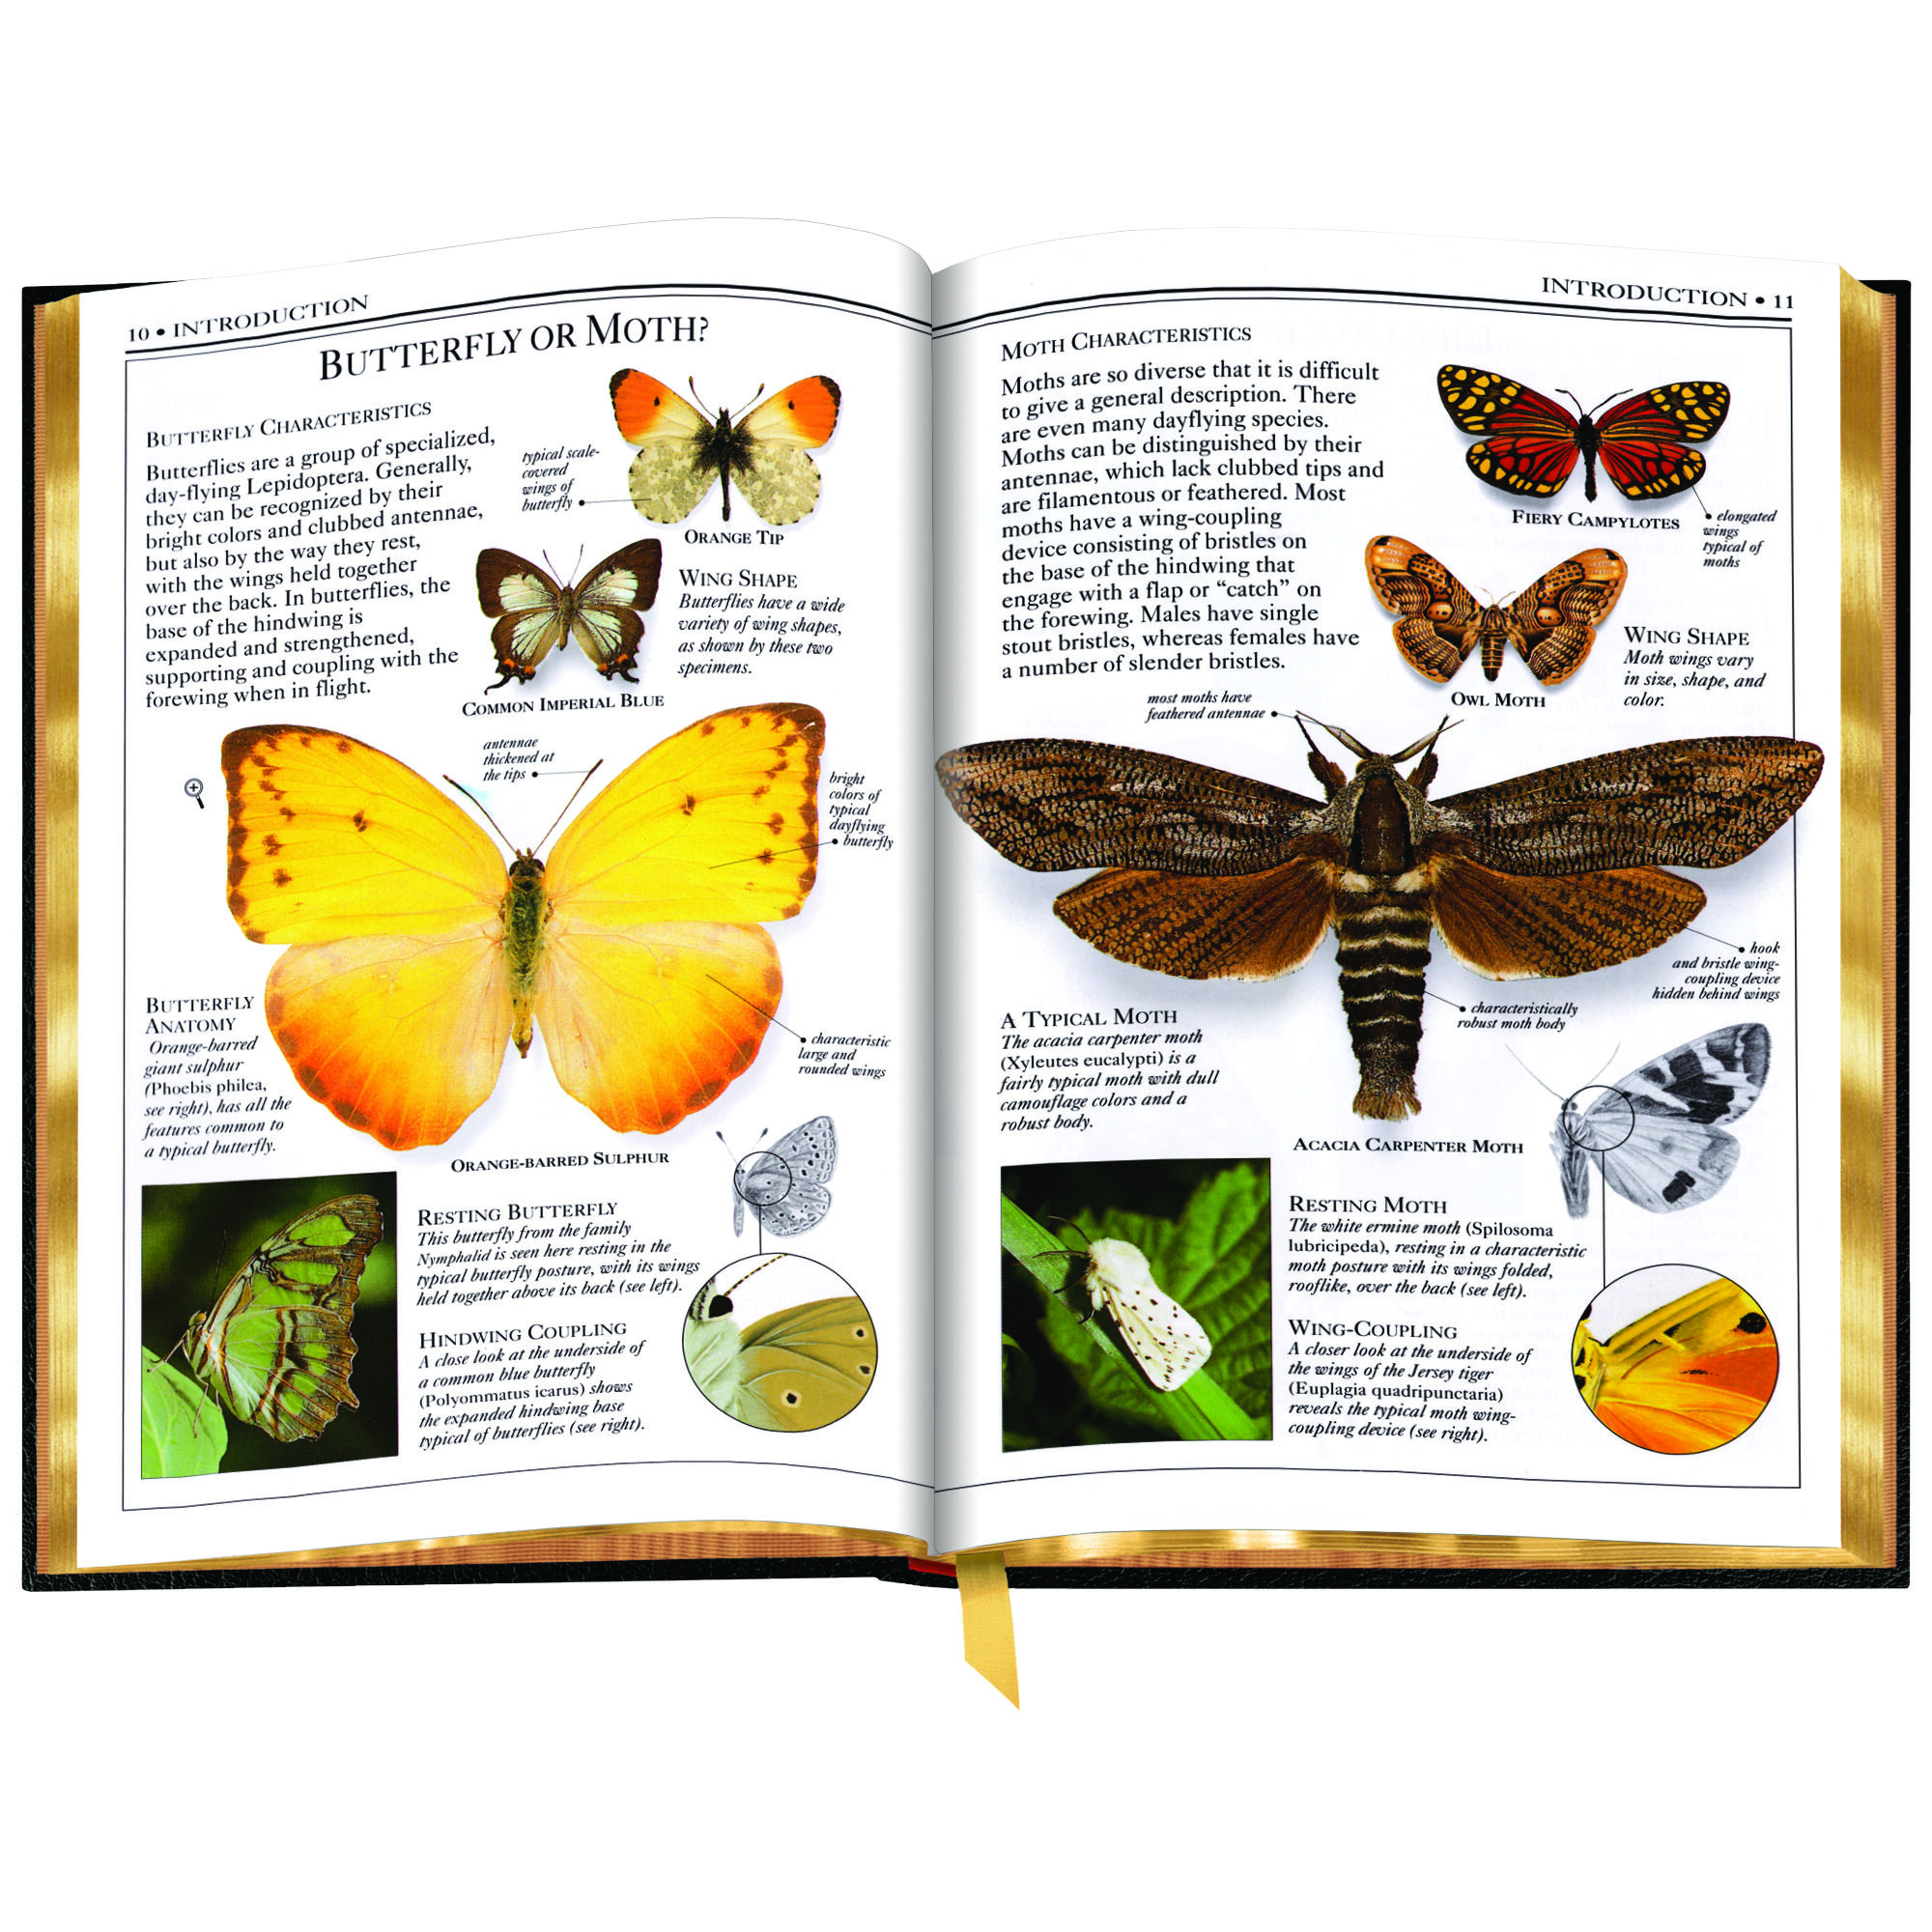 Butterflies and Moths 3860 f sp4